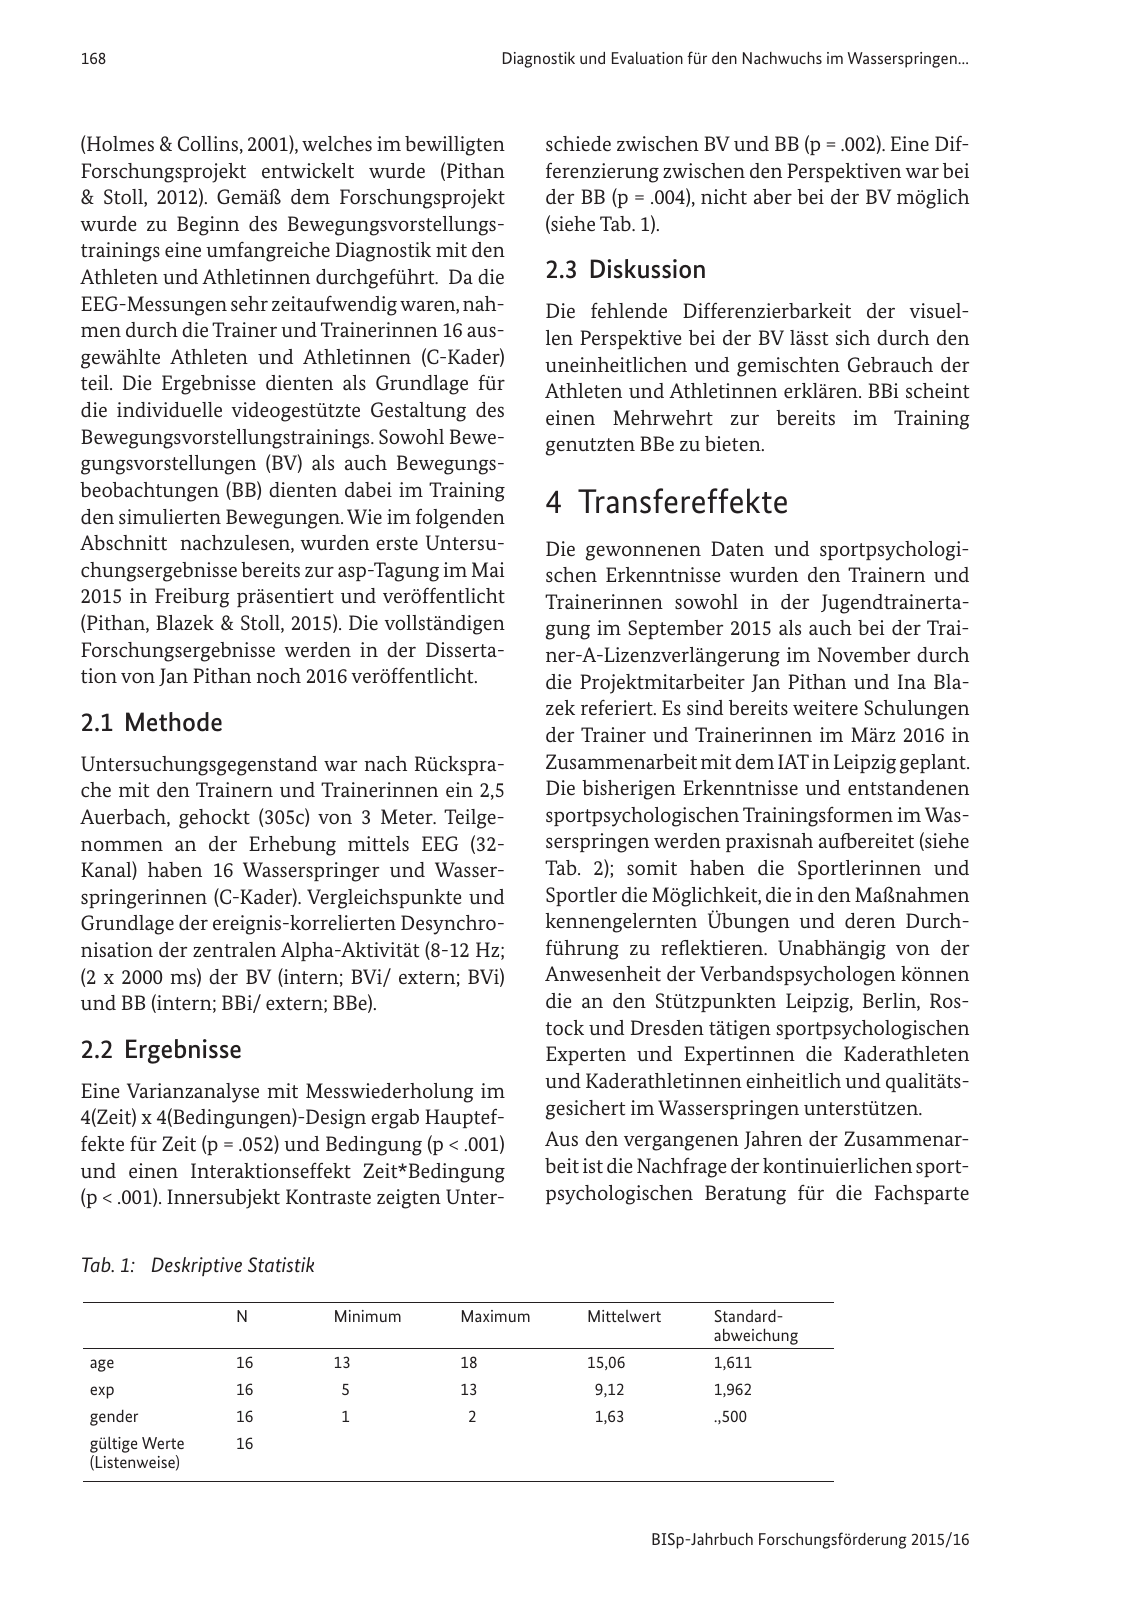 Vorschau BISp-Jahrbuch Forschungsförderung 2015/16 Seite 170